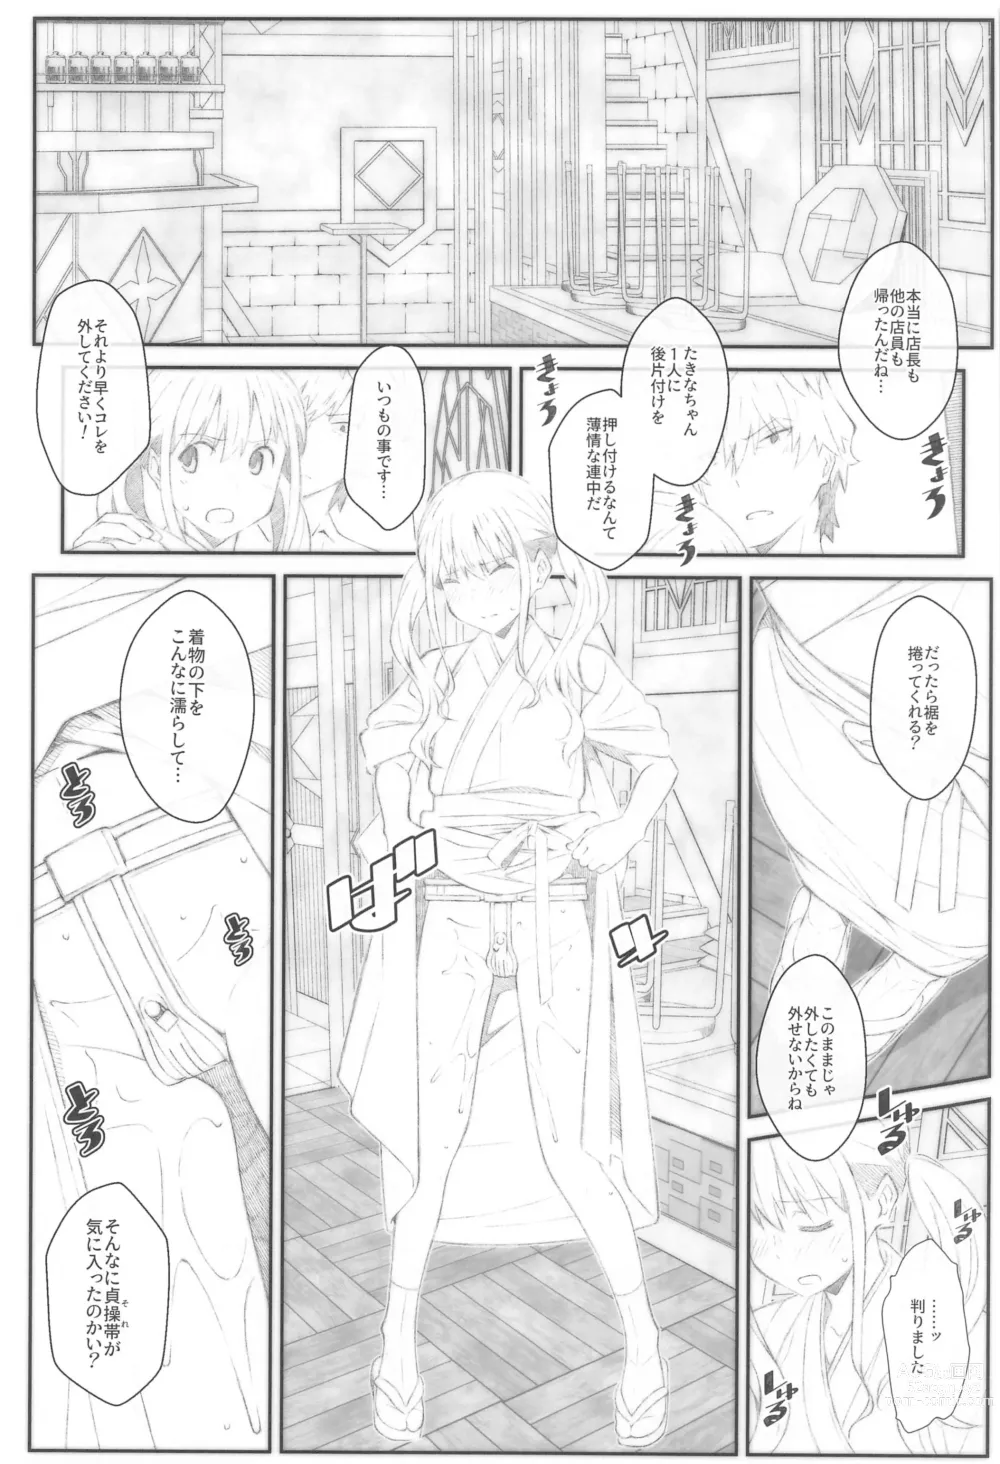 Page 9 of doujinshi TYPE-68b